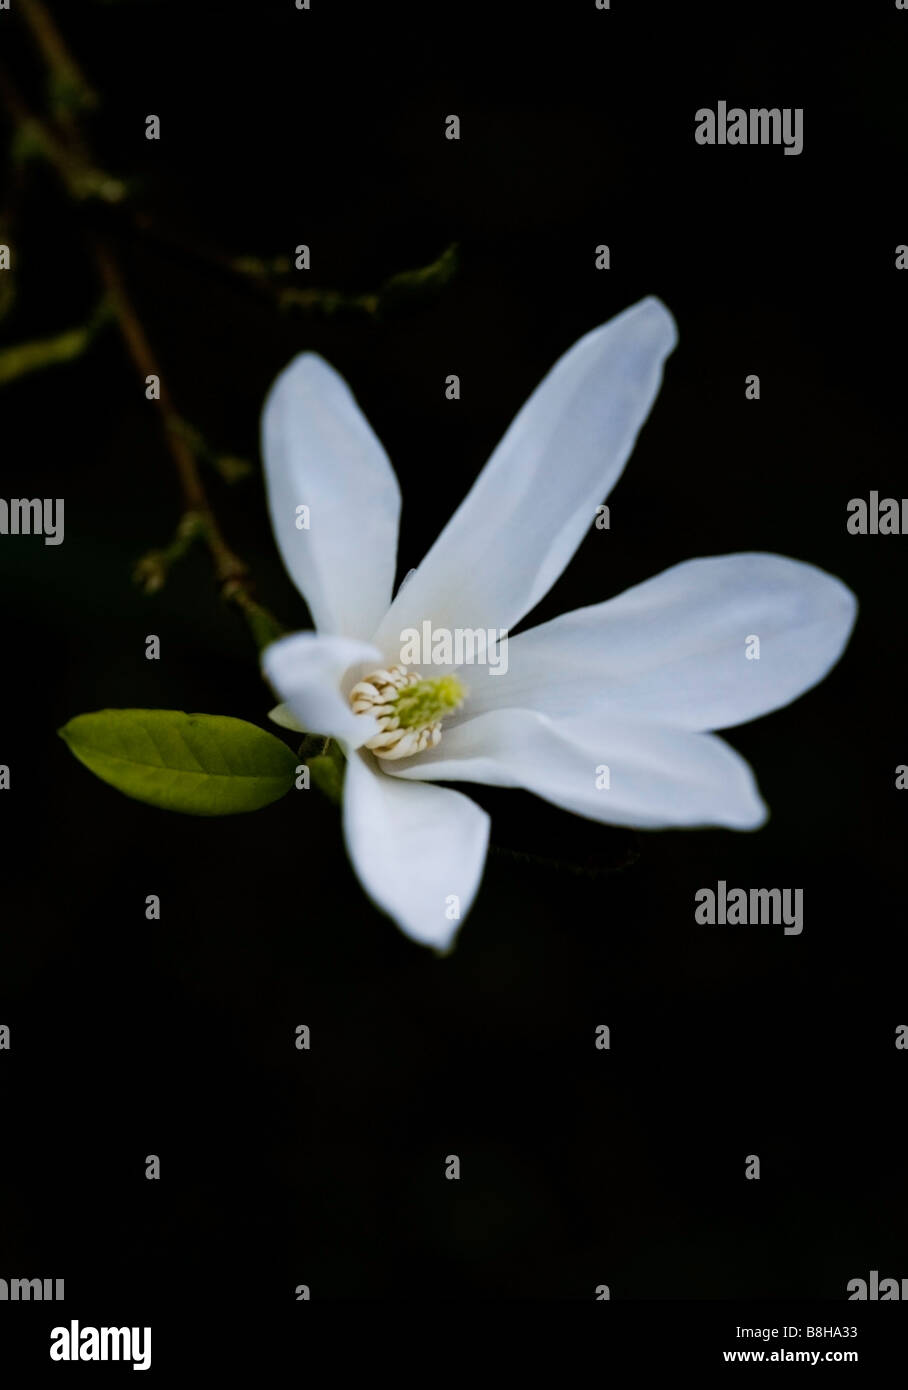 COMMON NAME Star magnolia LATIN NAME Magnolia stellata Stock Photo